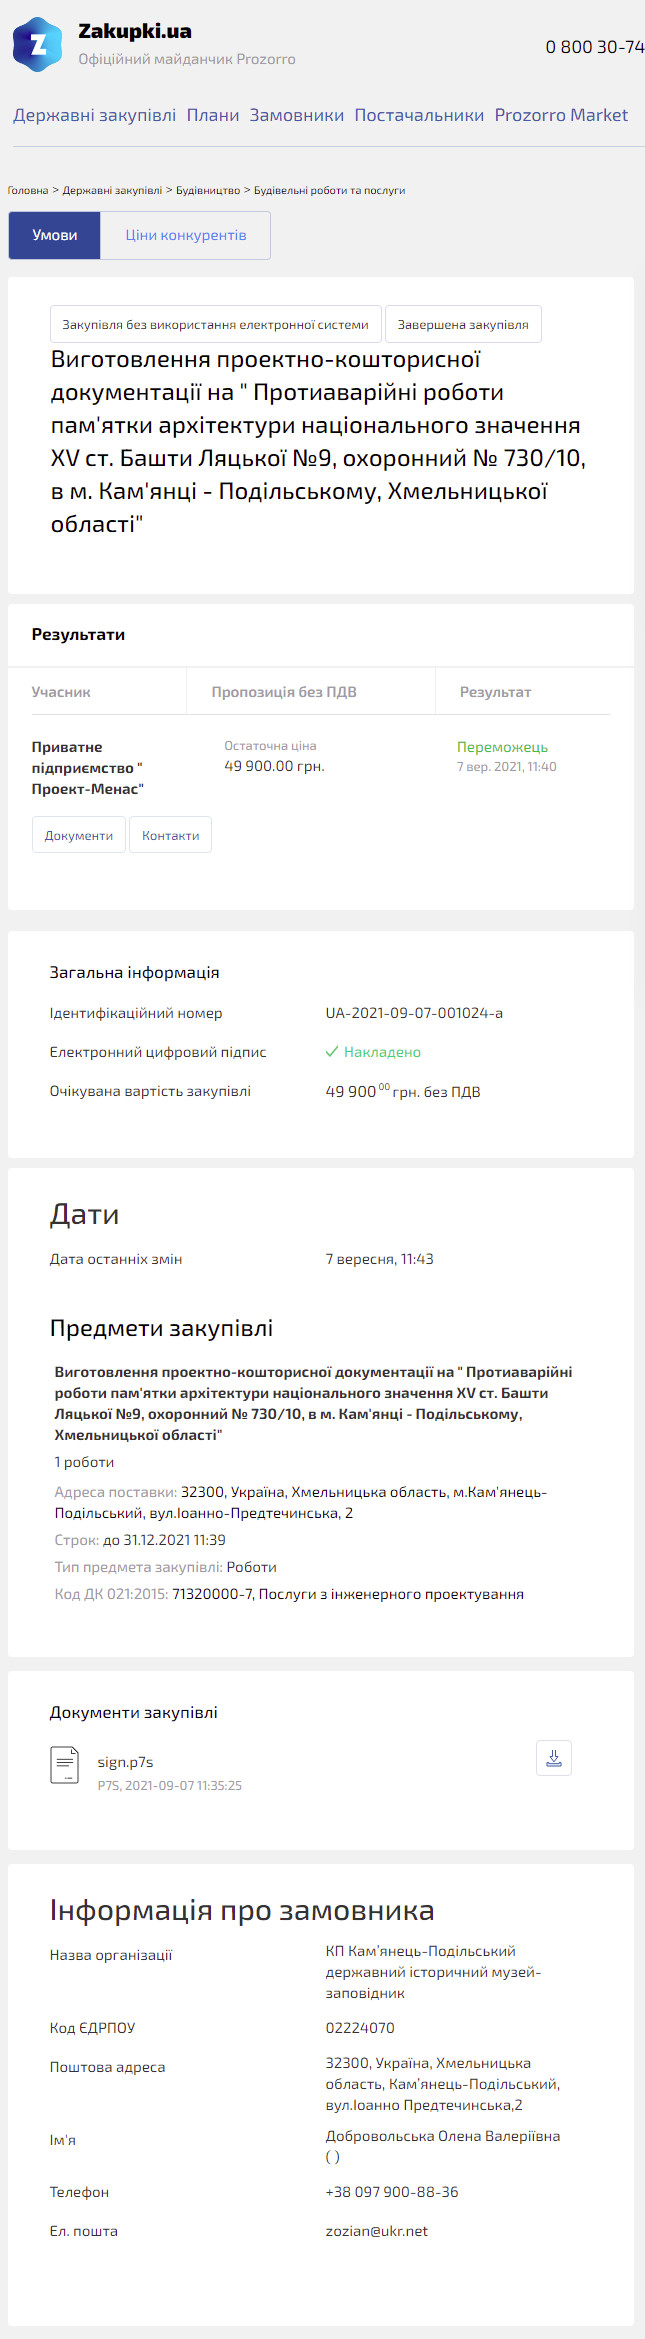 https://zakupki.com.ua/tender/13239455